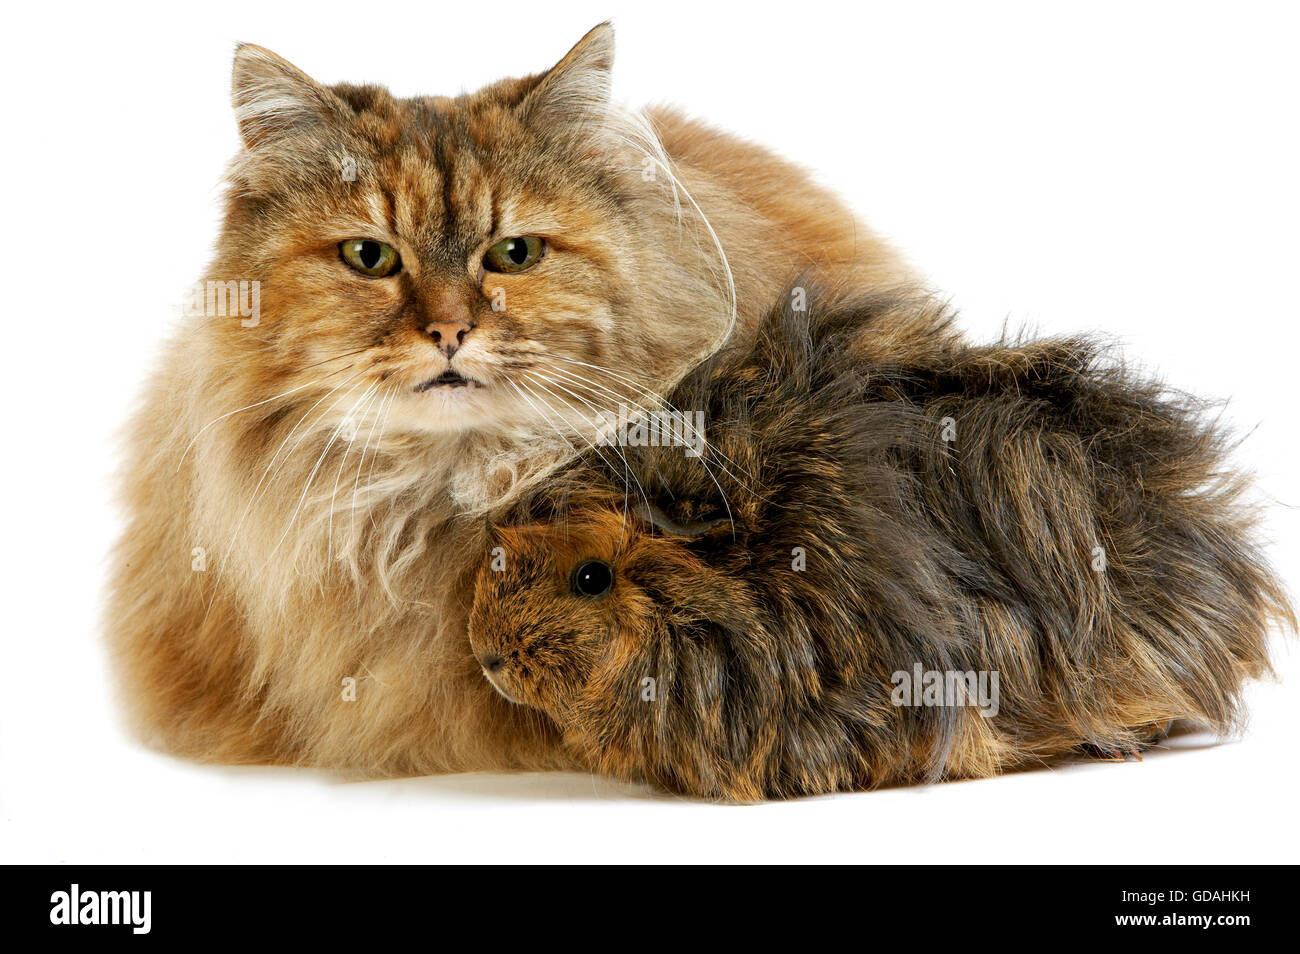 Tartaruga persiano gatto domestico con capelli lunghi Cavia contro uno sfondo bianco Foto Stock